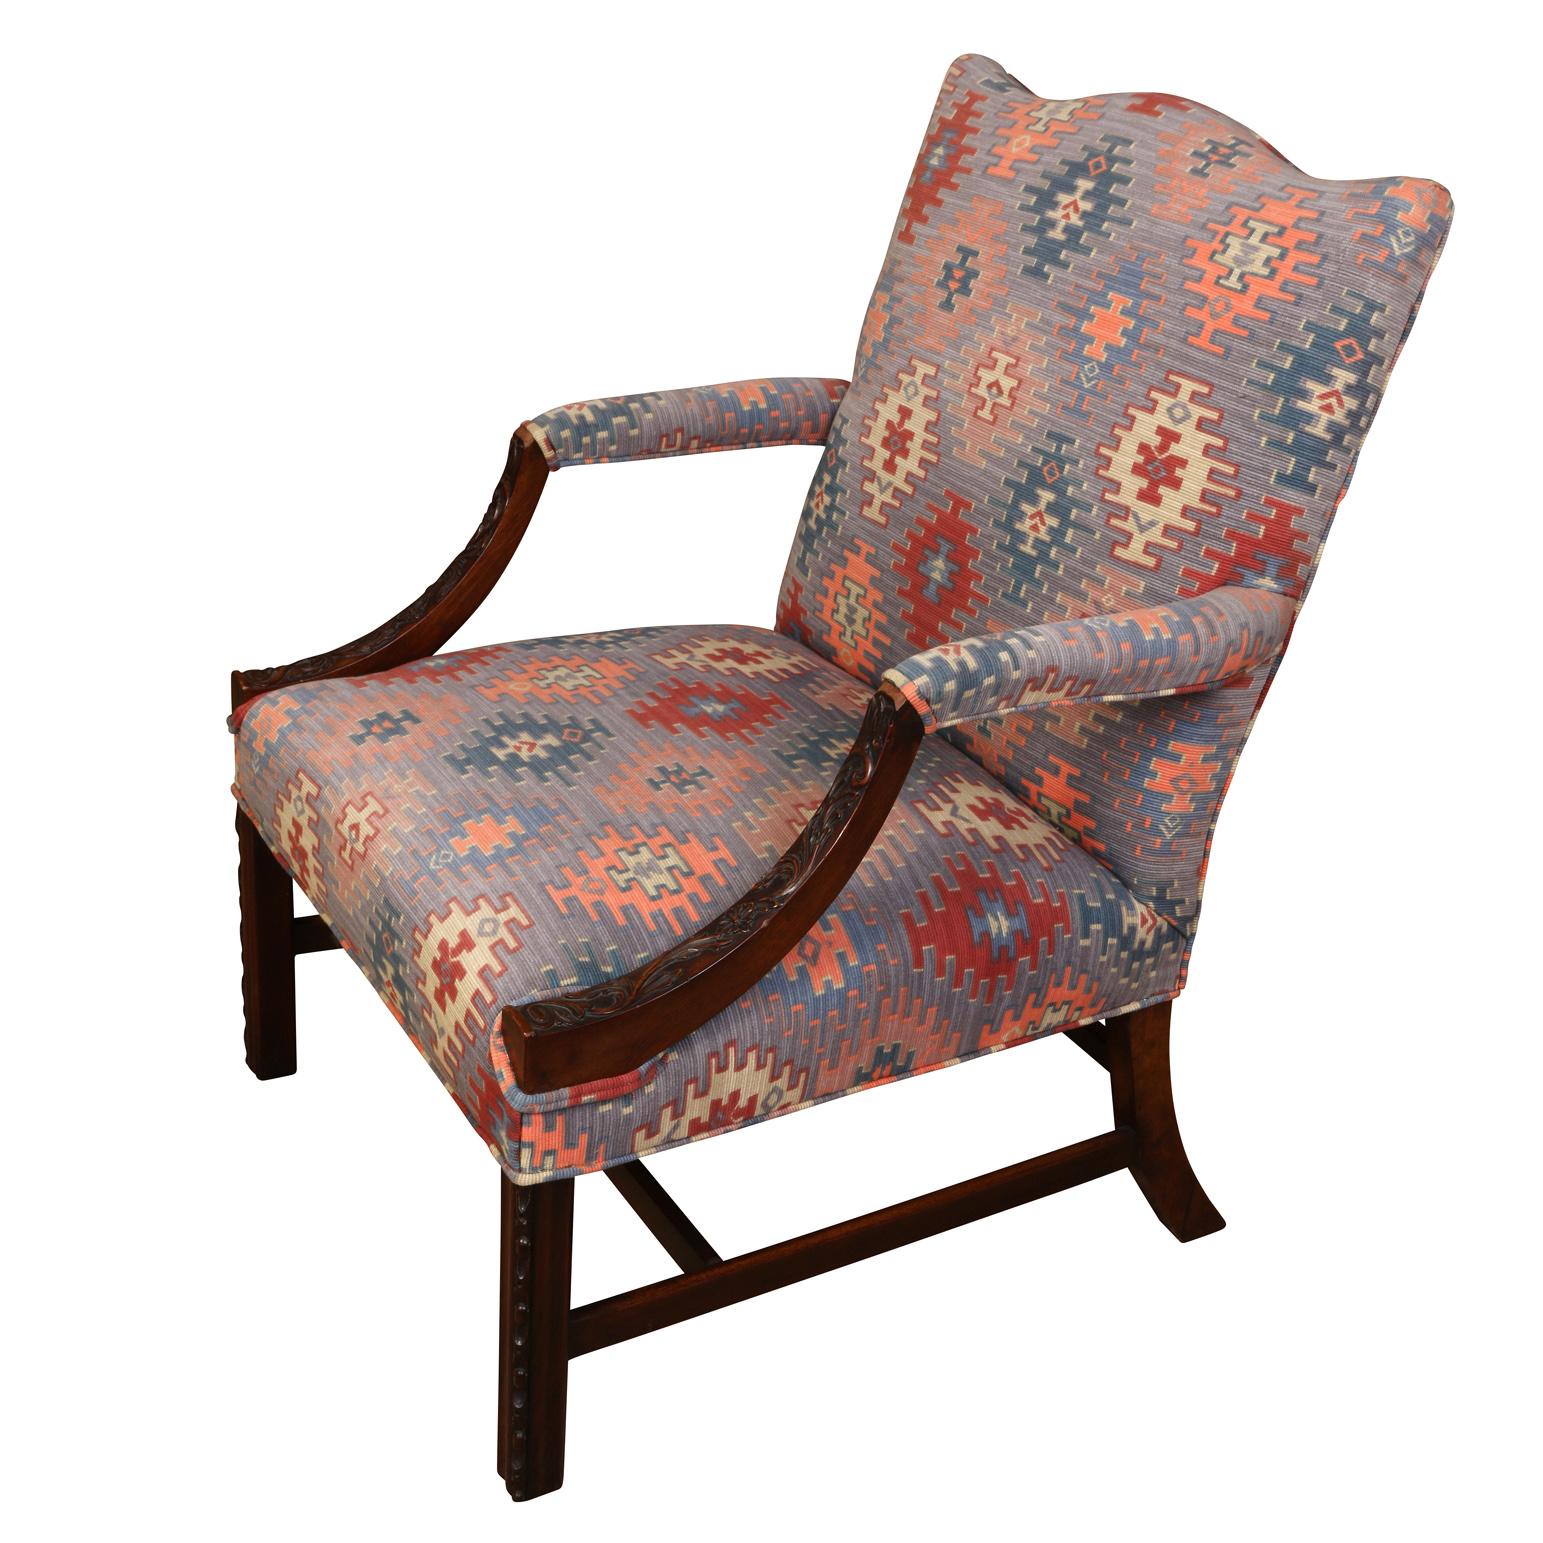 Une chaise de bibliothèque de style George III avec des bras sculptés en acajou, des pieds droits et un dossier façonné. Tapissé d'un motif kilim ikat bleu, rose et saumon.